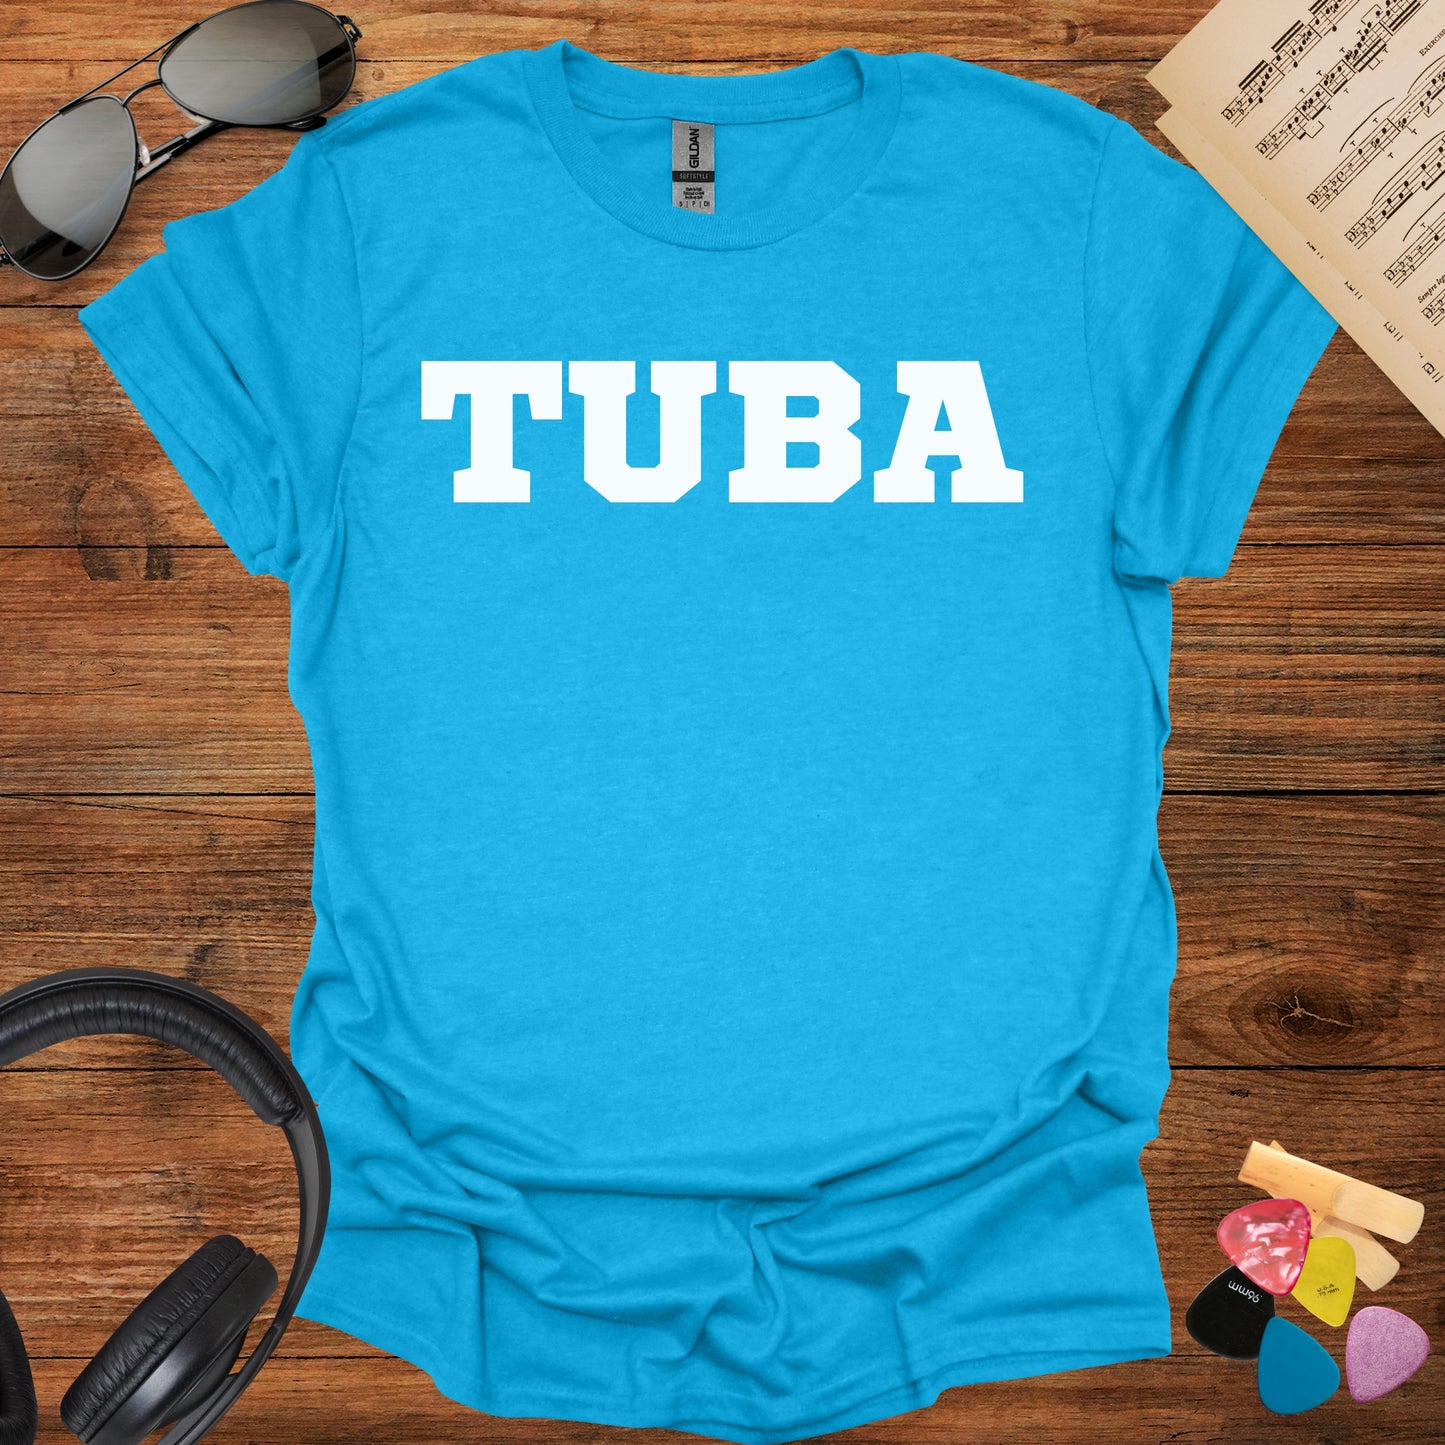 Tuba Tshirt